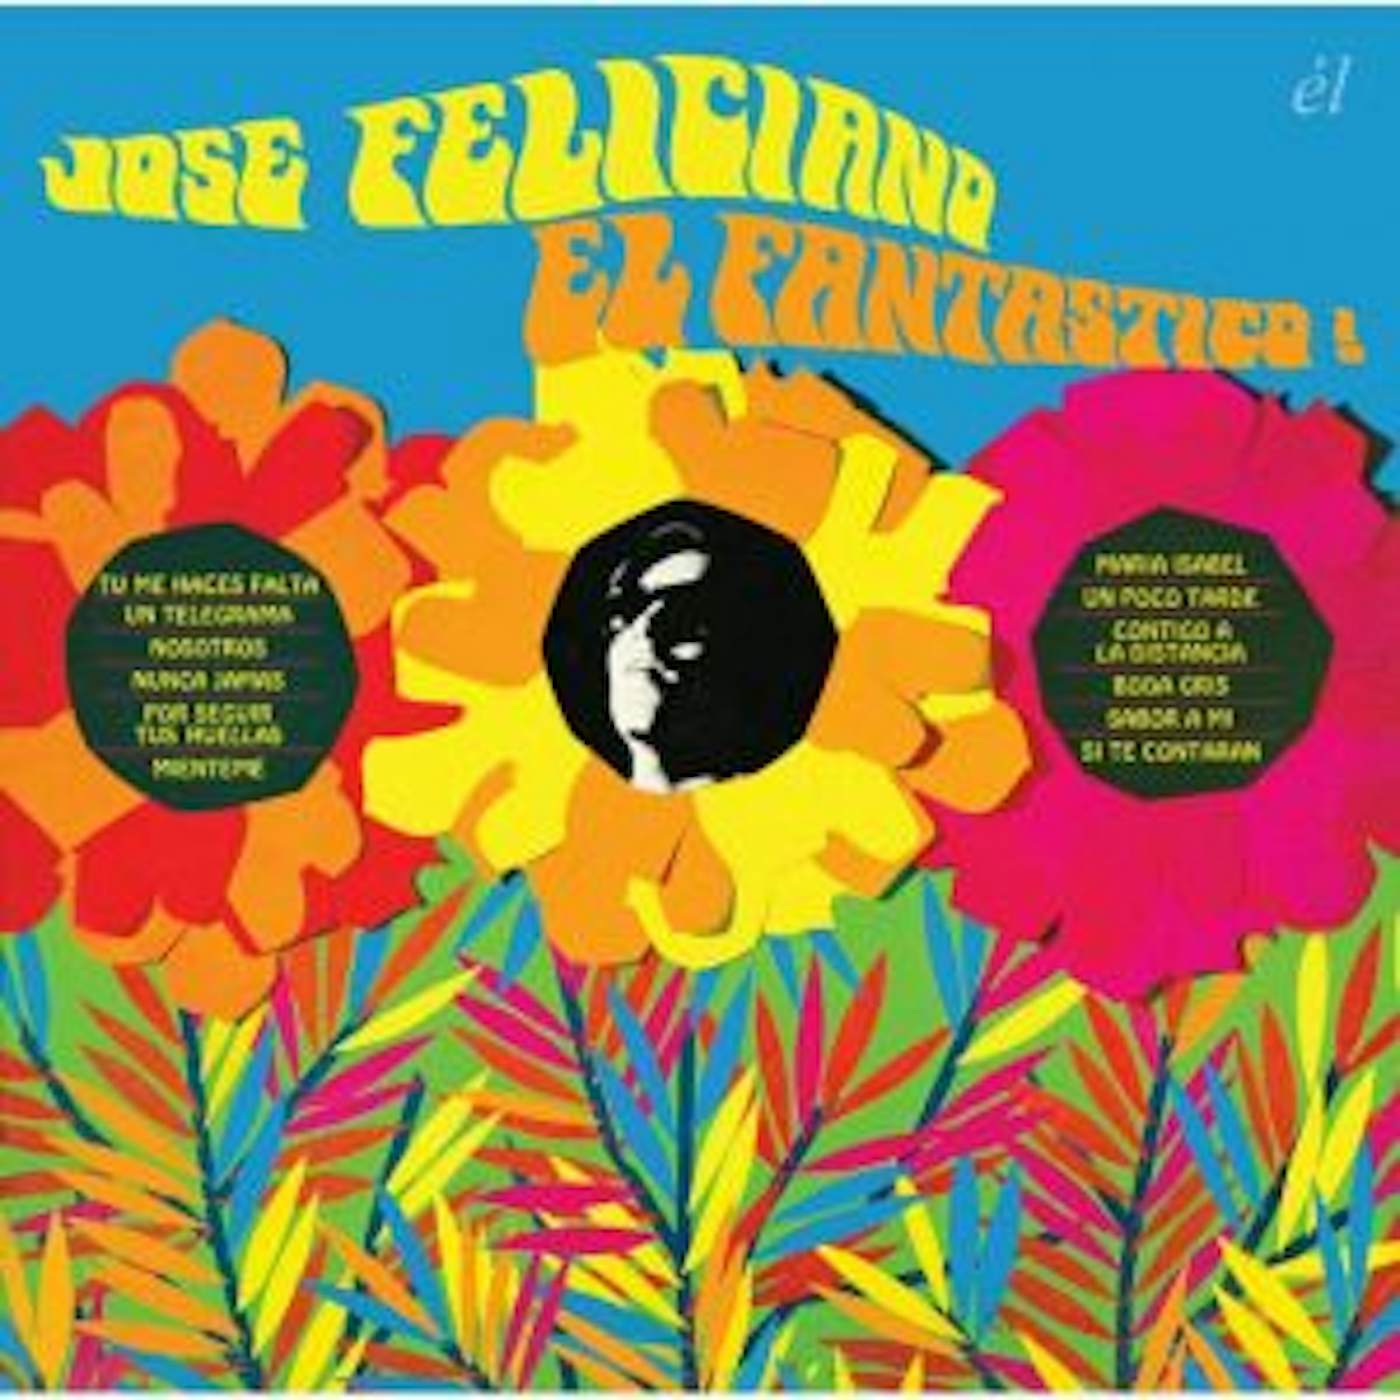 José Feliciano EL FANTASTICO! SOMBRAS UNA VOZ UNA GUITARRA CD